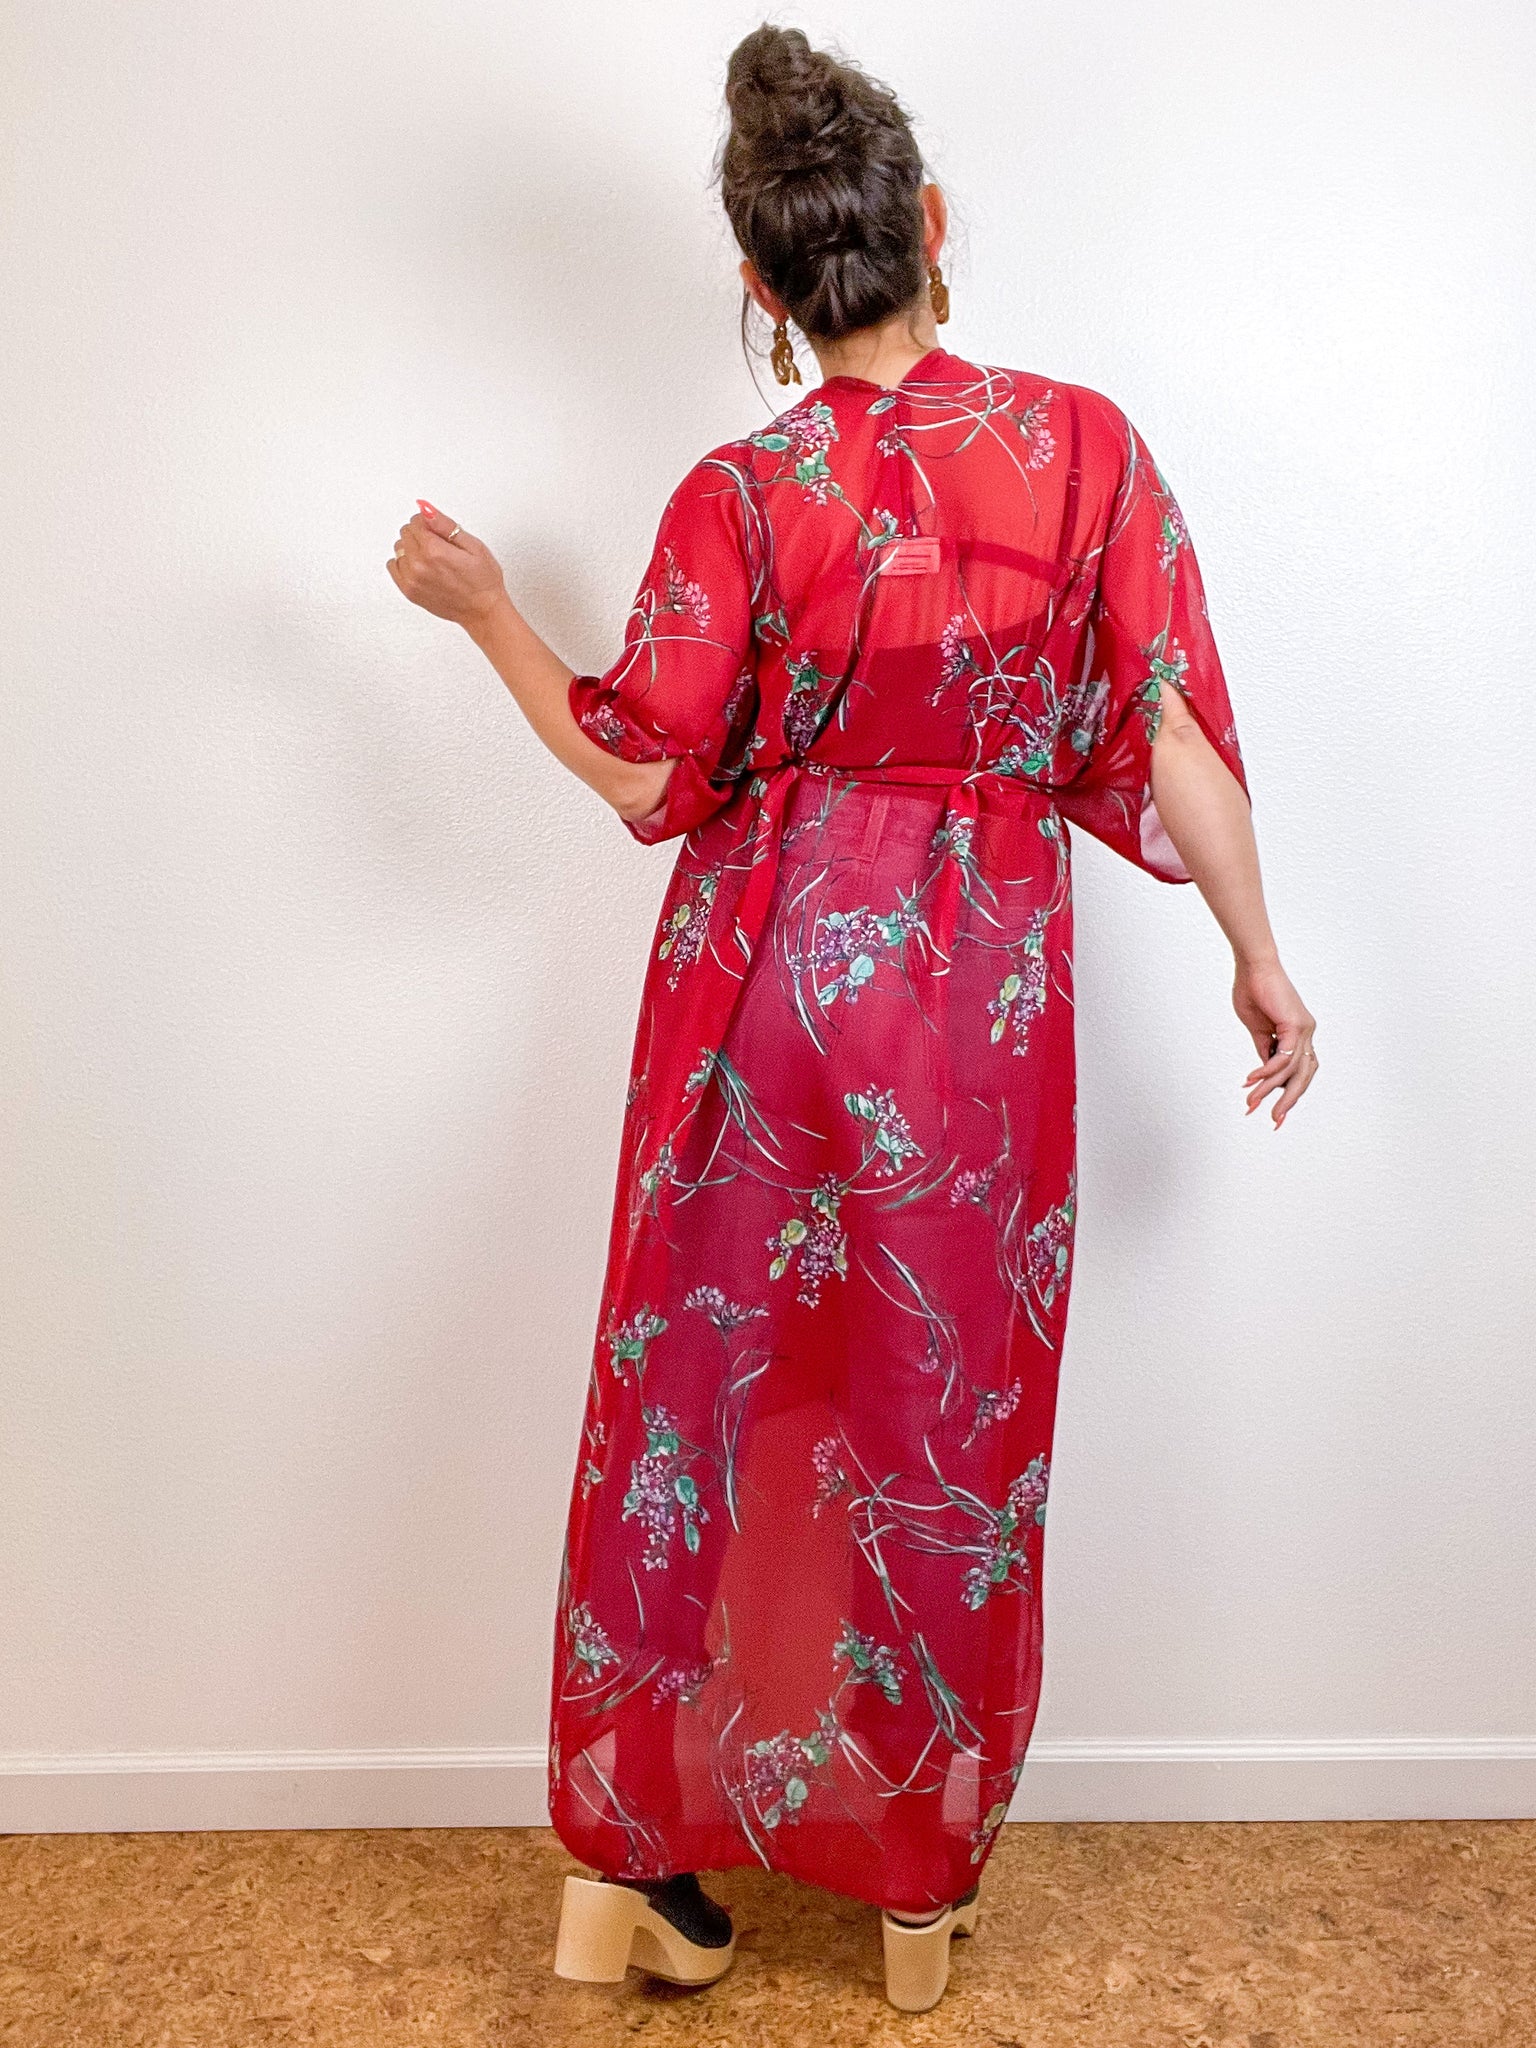 Print High Low Kimono Red Floral Chiffon